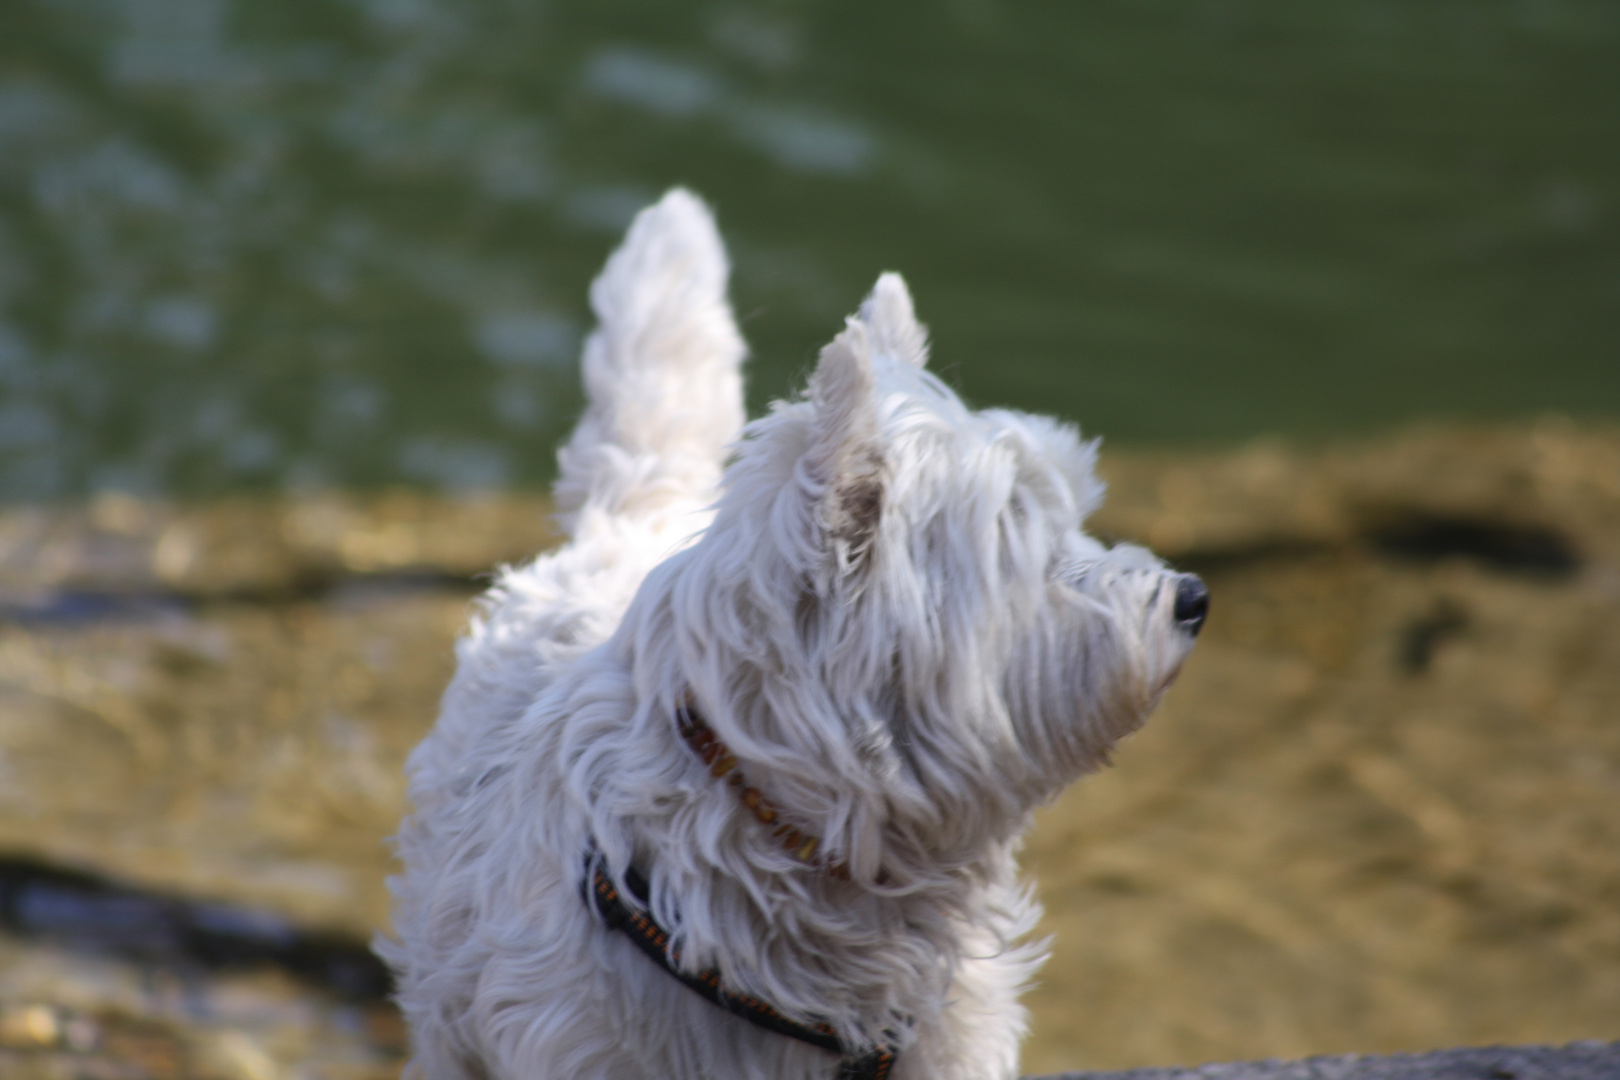 Westhighland-Terrier